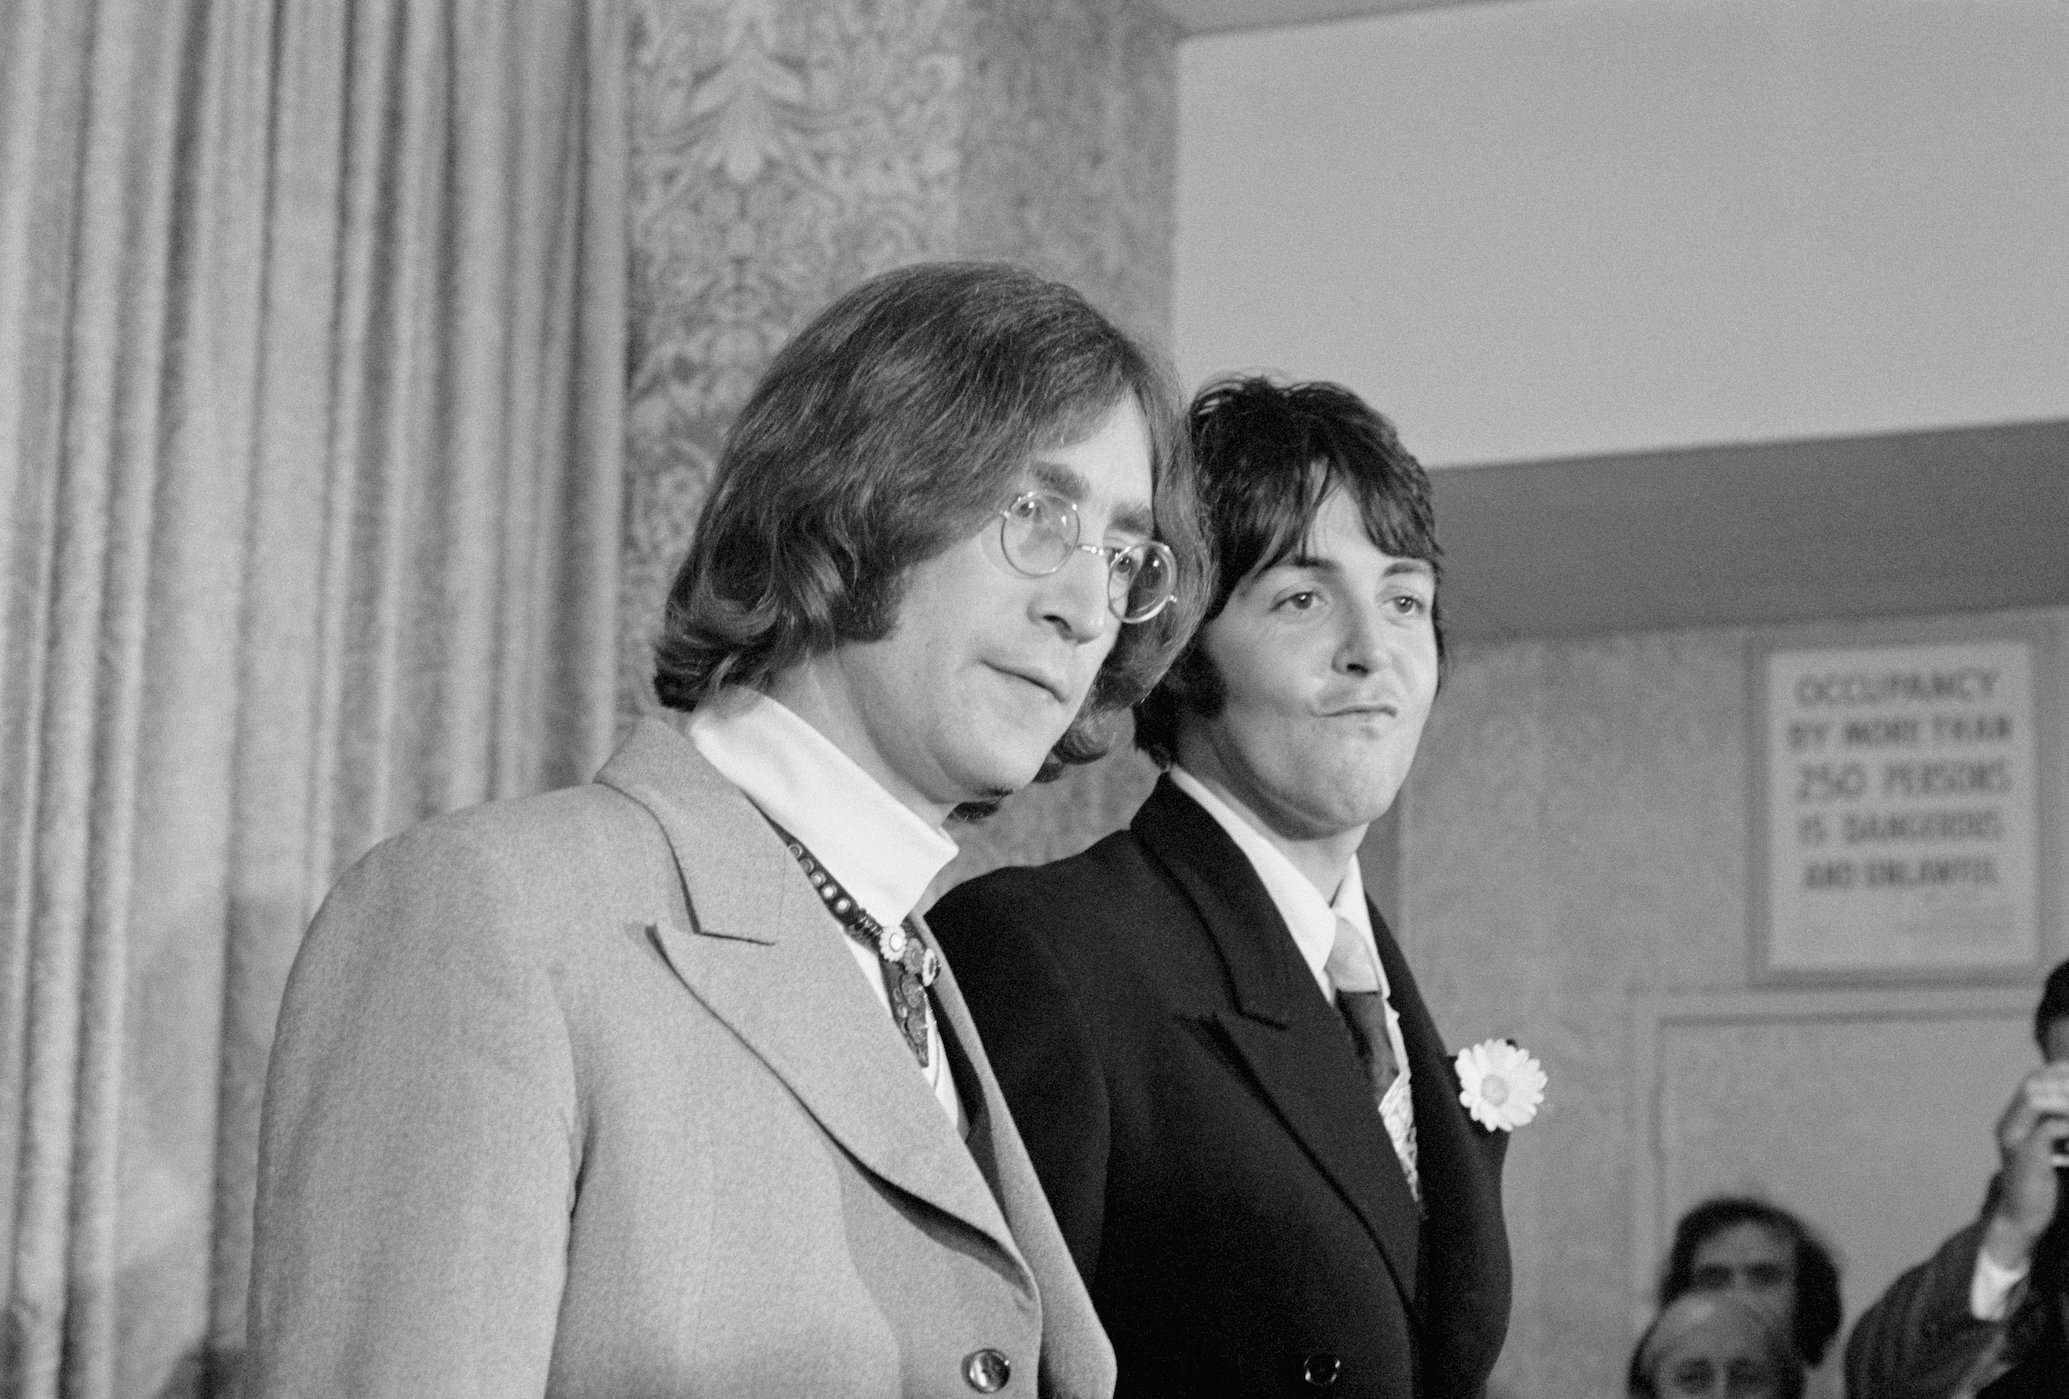 Paul McCartney Membagikan Apa yang Paling Membuatnya Terkesan Tentang John Lennon Ketika Mereka Pertama Kali Bertemu